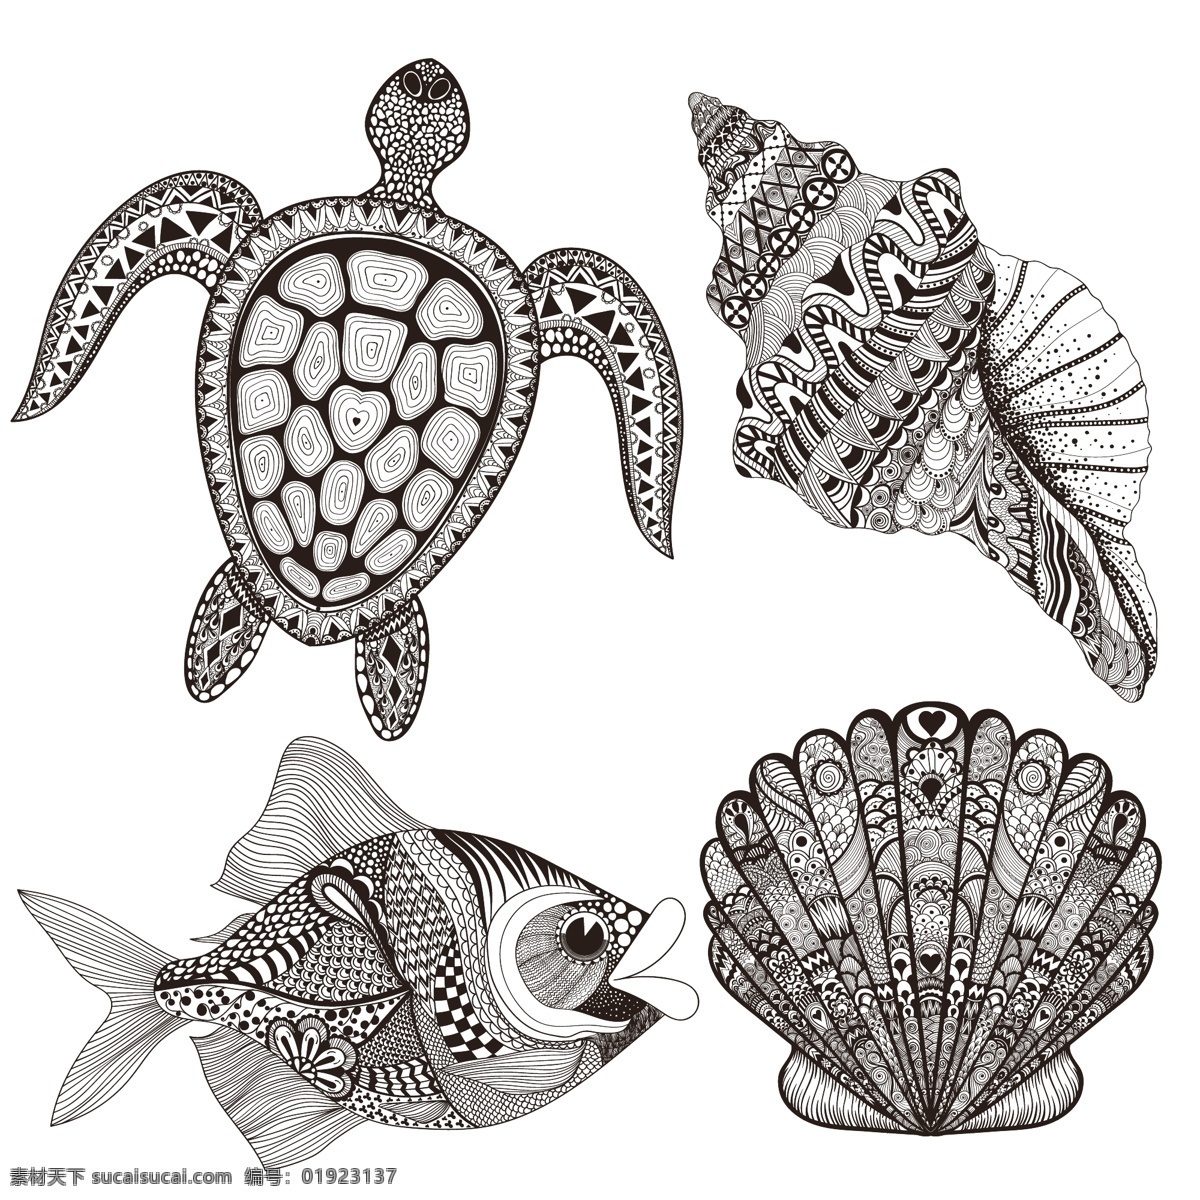 海洋 动物 花卉 装饰 图案 矢量 海龟 扇贝